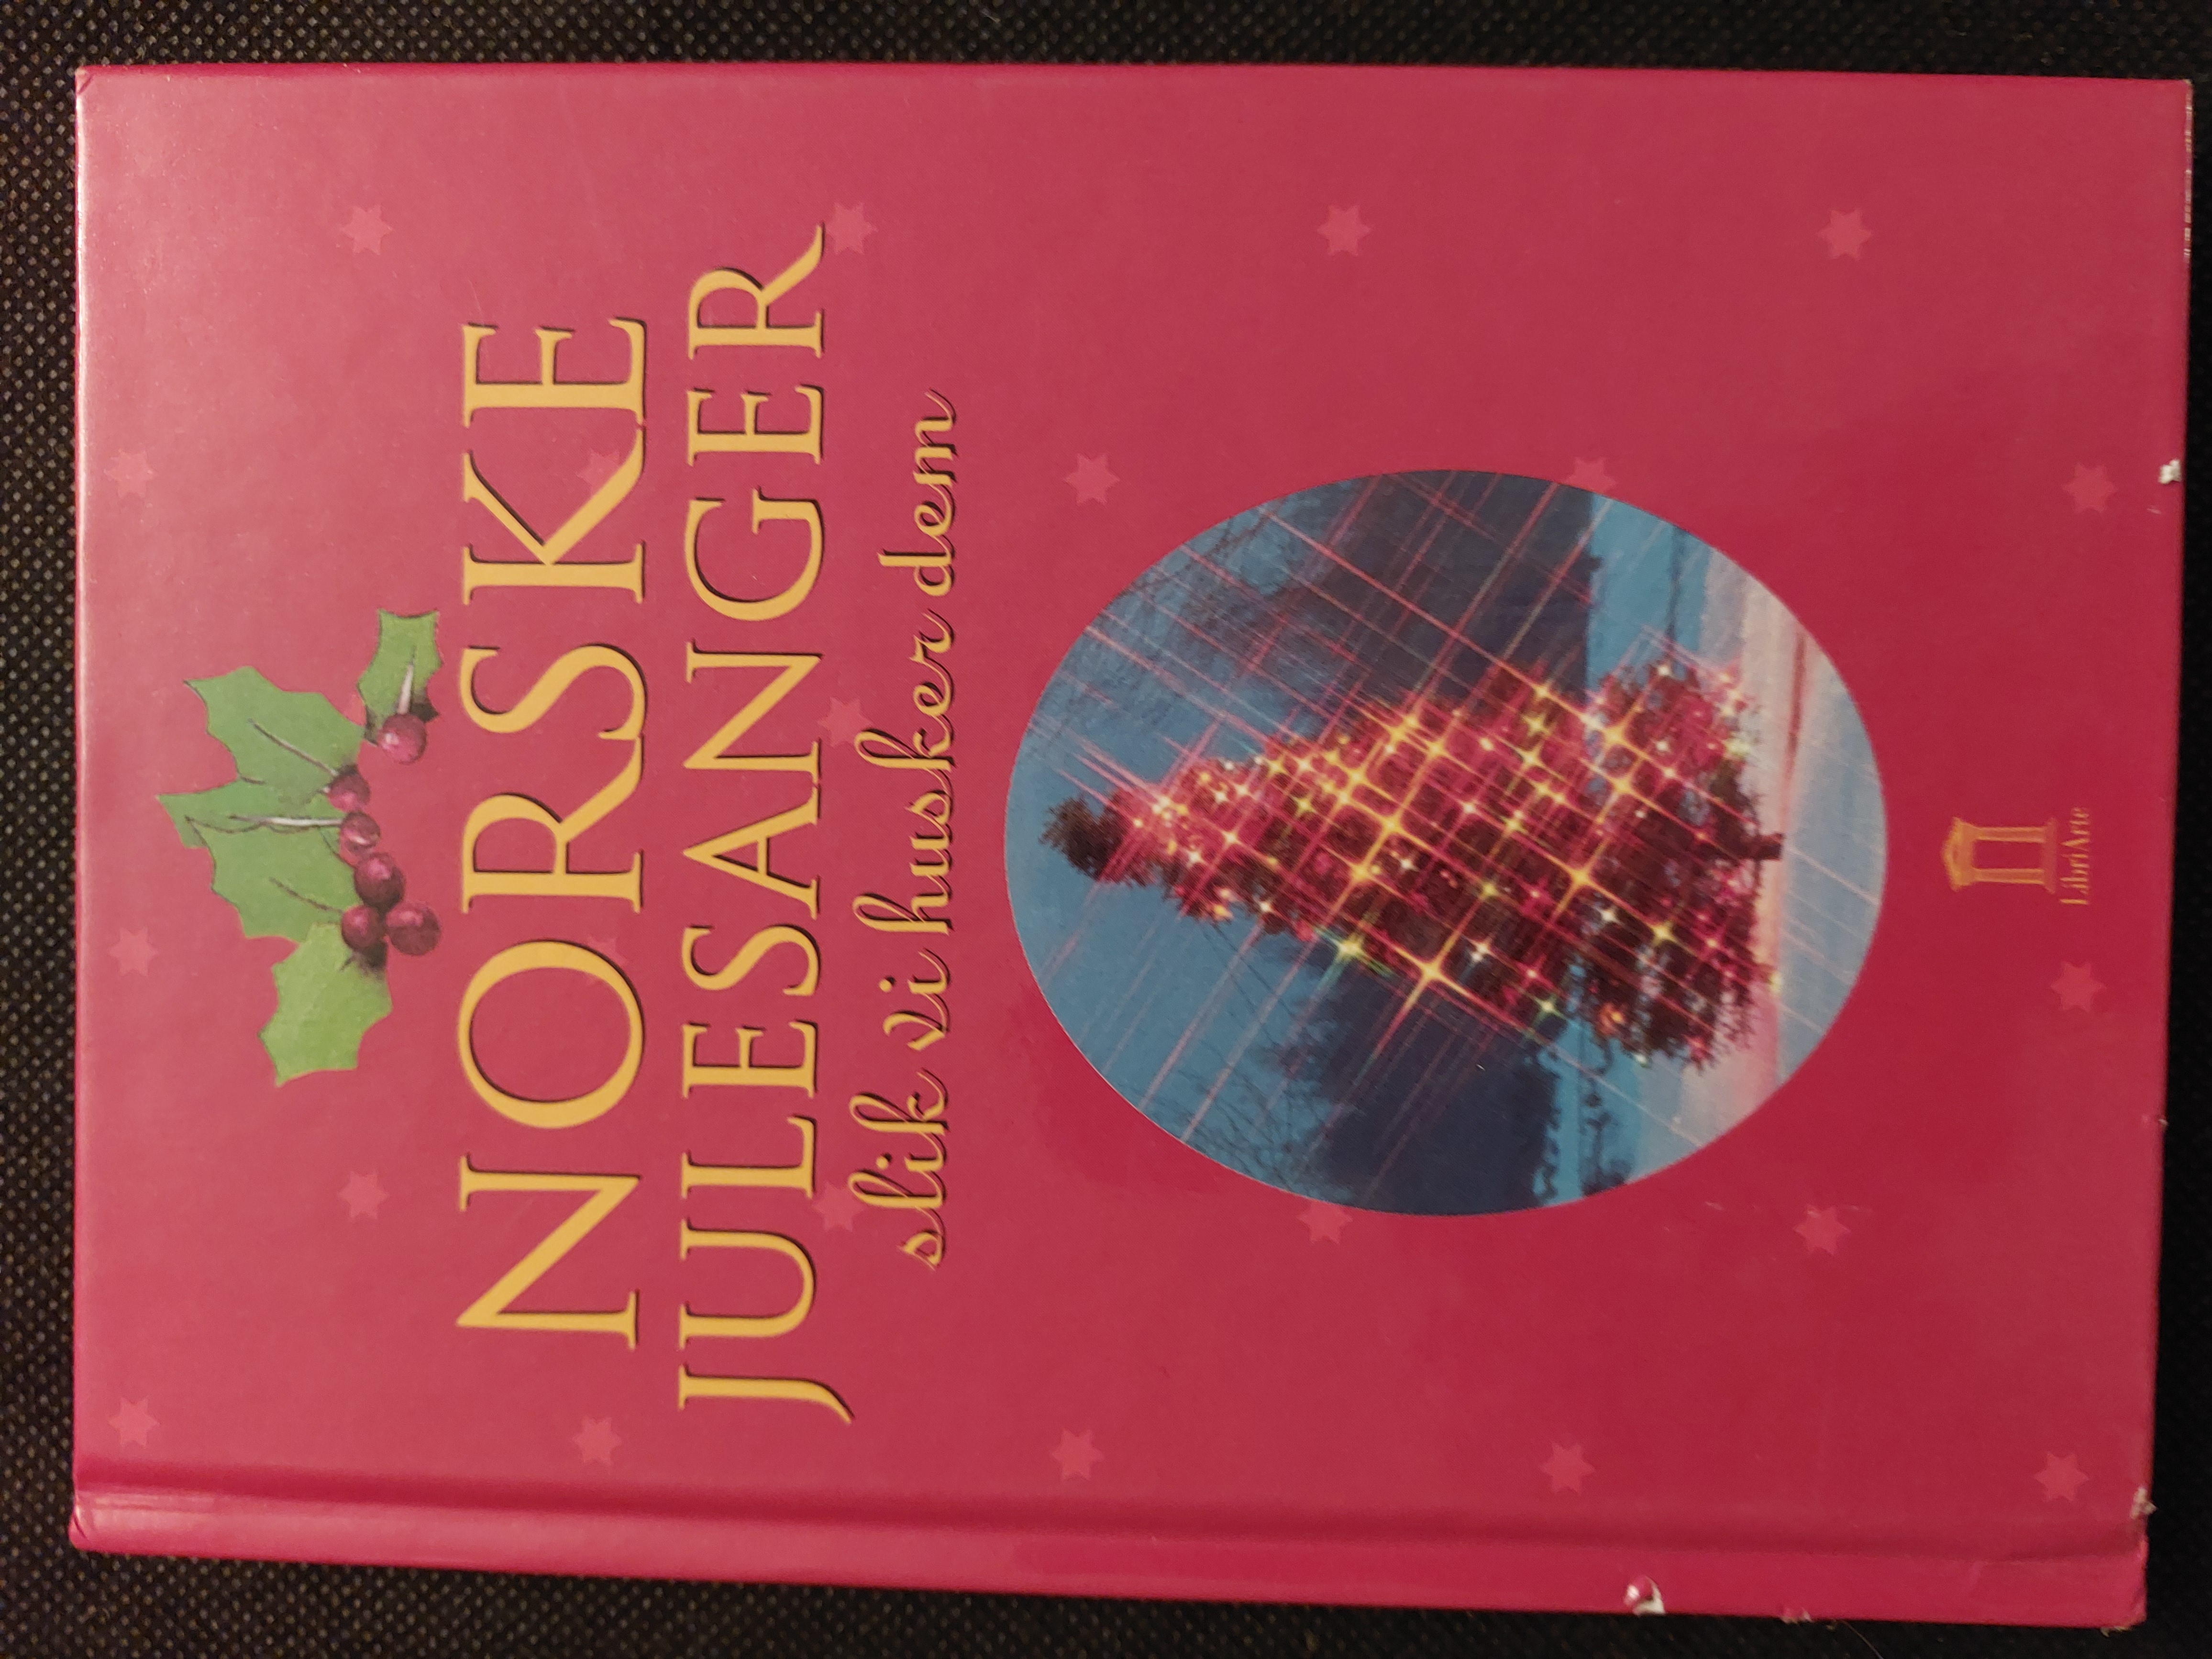 Norske julesanger - slik vi husker dem